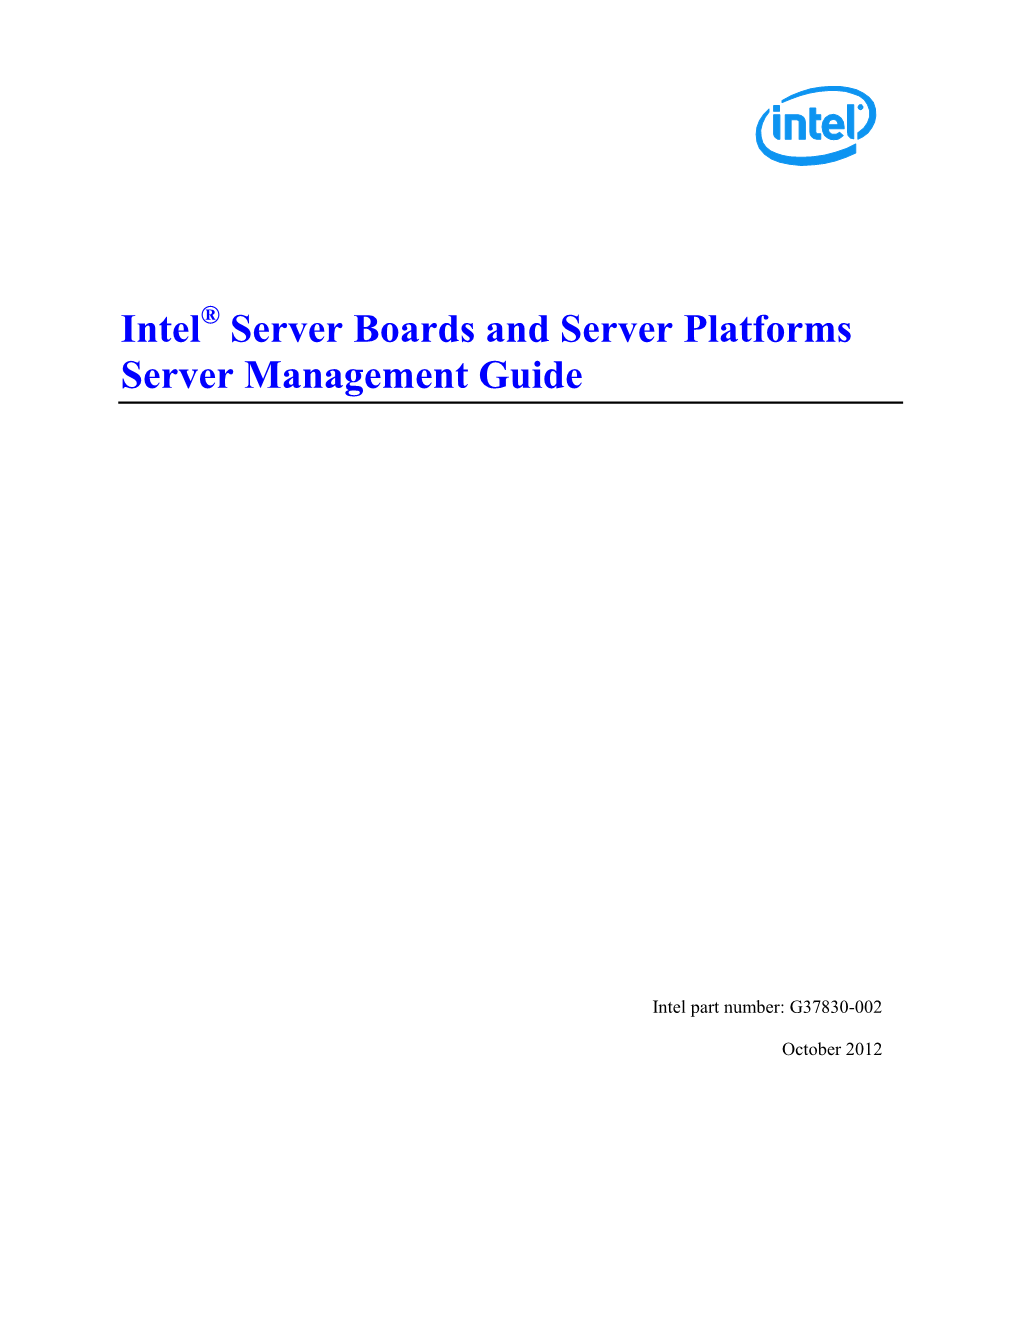 Intel® Server Boards and Server Platforms Server Management Guide